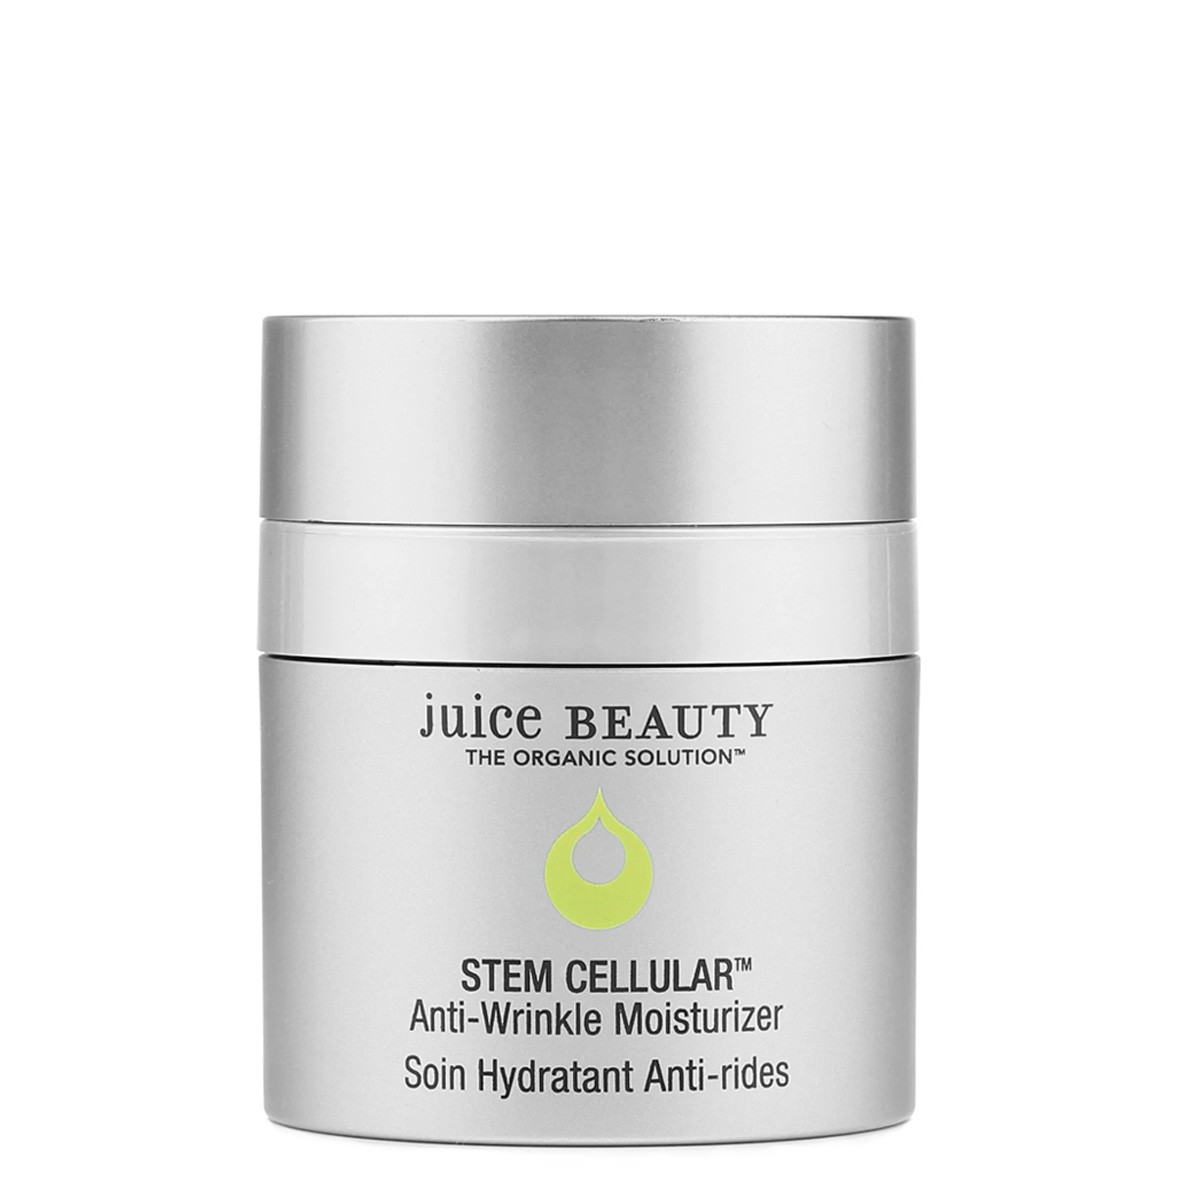 Juice Beauty Stem Cellular Anti-Wrinkle Moisturizer - Hidratante antiarrugas